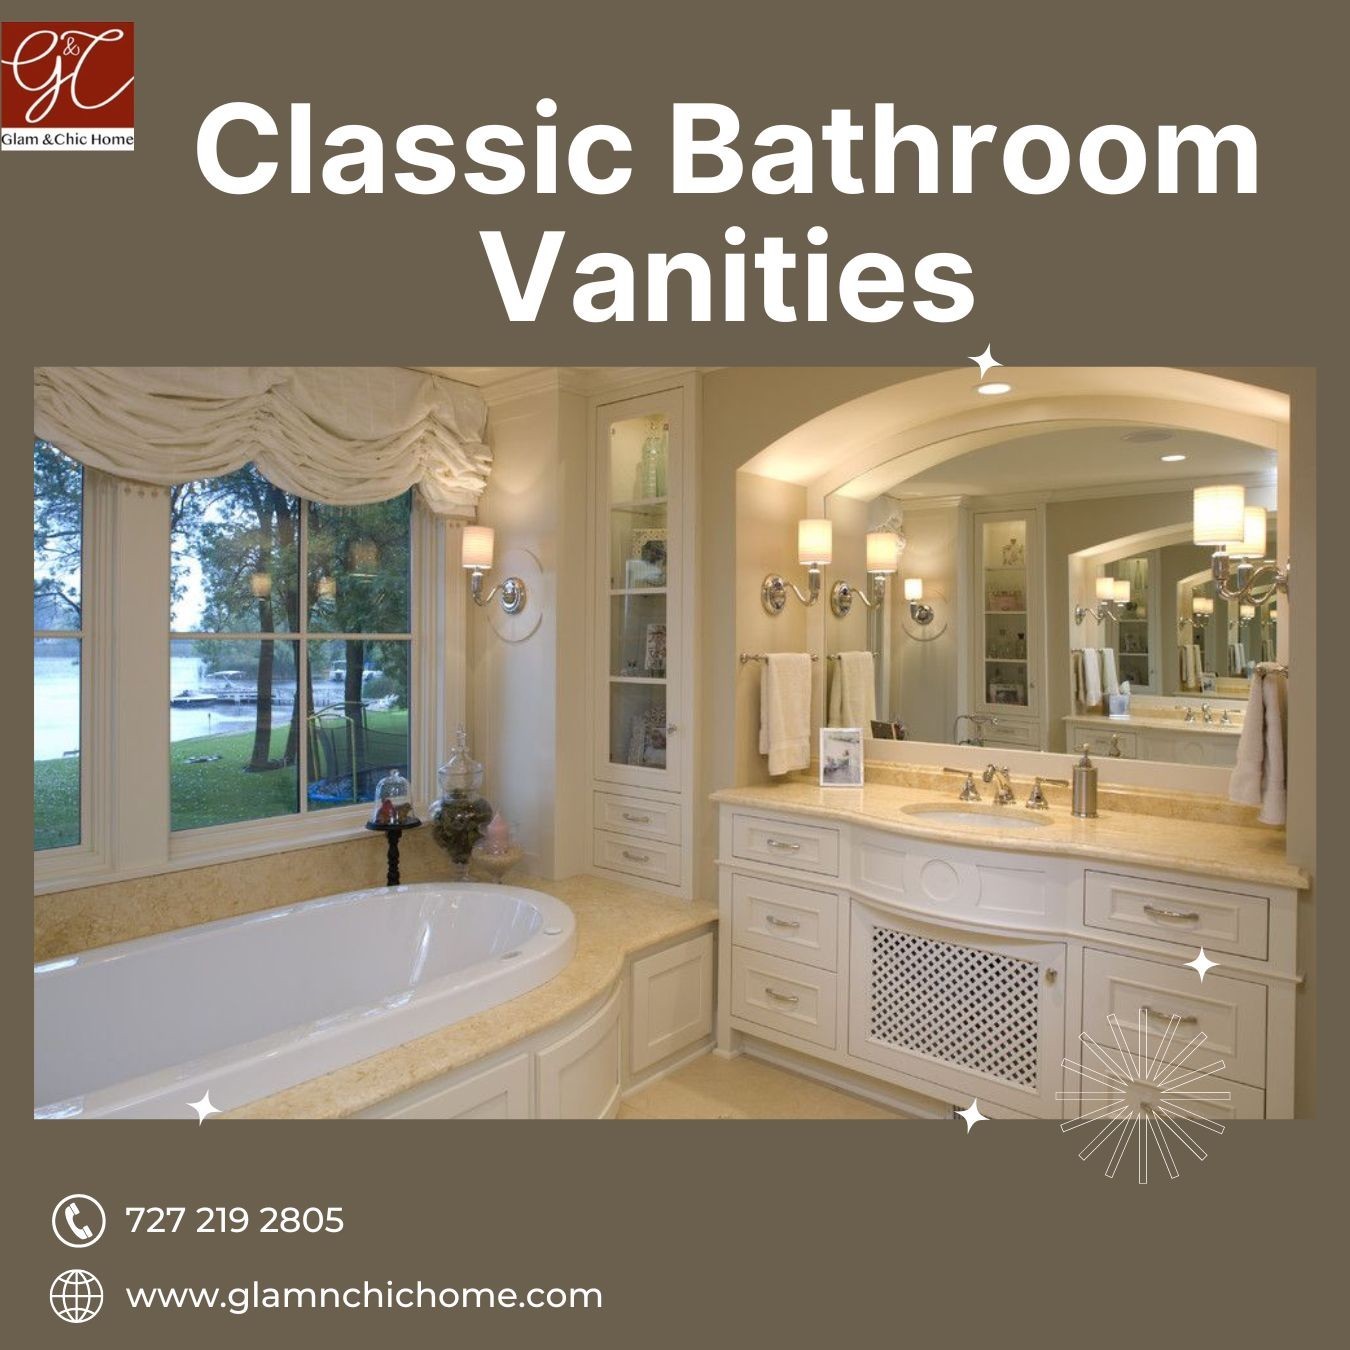 Best Classic Bathroom Vanities for your Bathroom